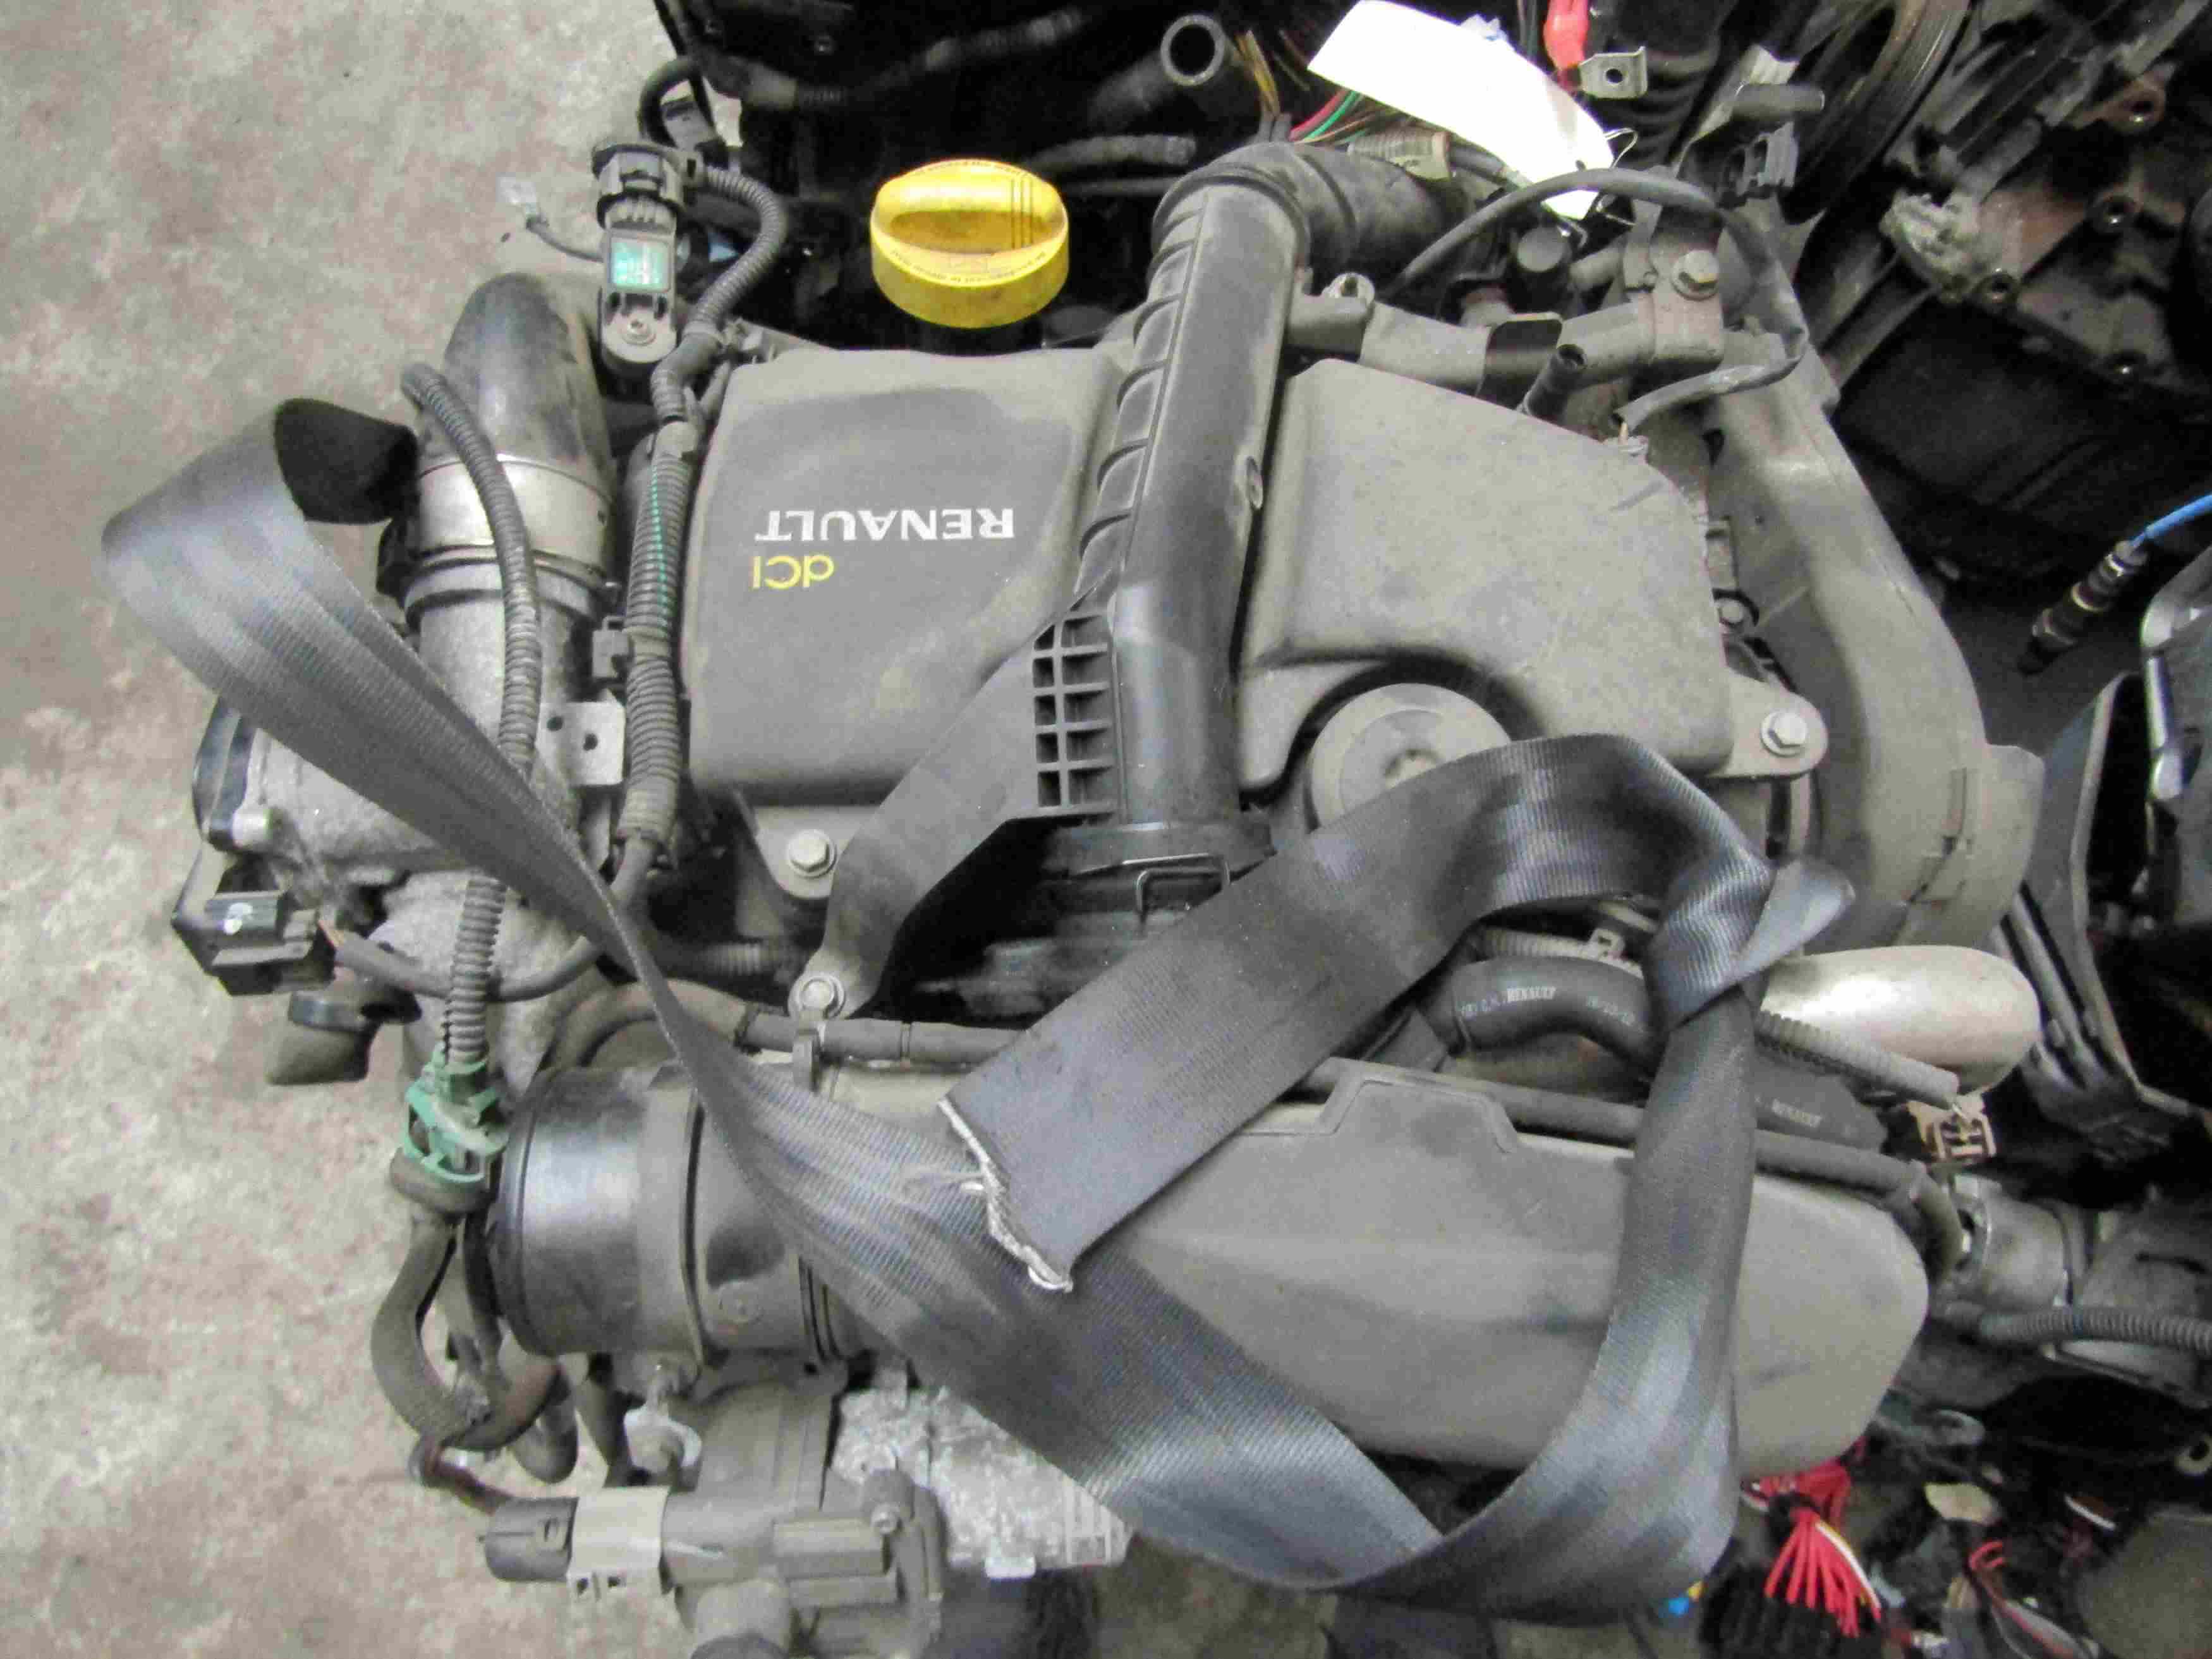 Moteur RENAULT Clio 3 1.5 dCi 75CV
01.2013

Type moteur : K9K770
138730 Km

Vendu sans alternateur, démarreur, compresseur de clim
Garanti(e) 12 mois
Frais de Port sur devis